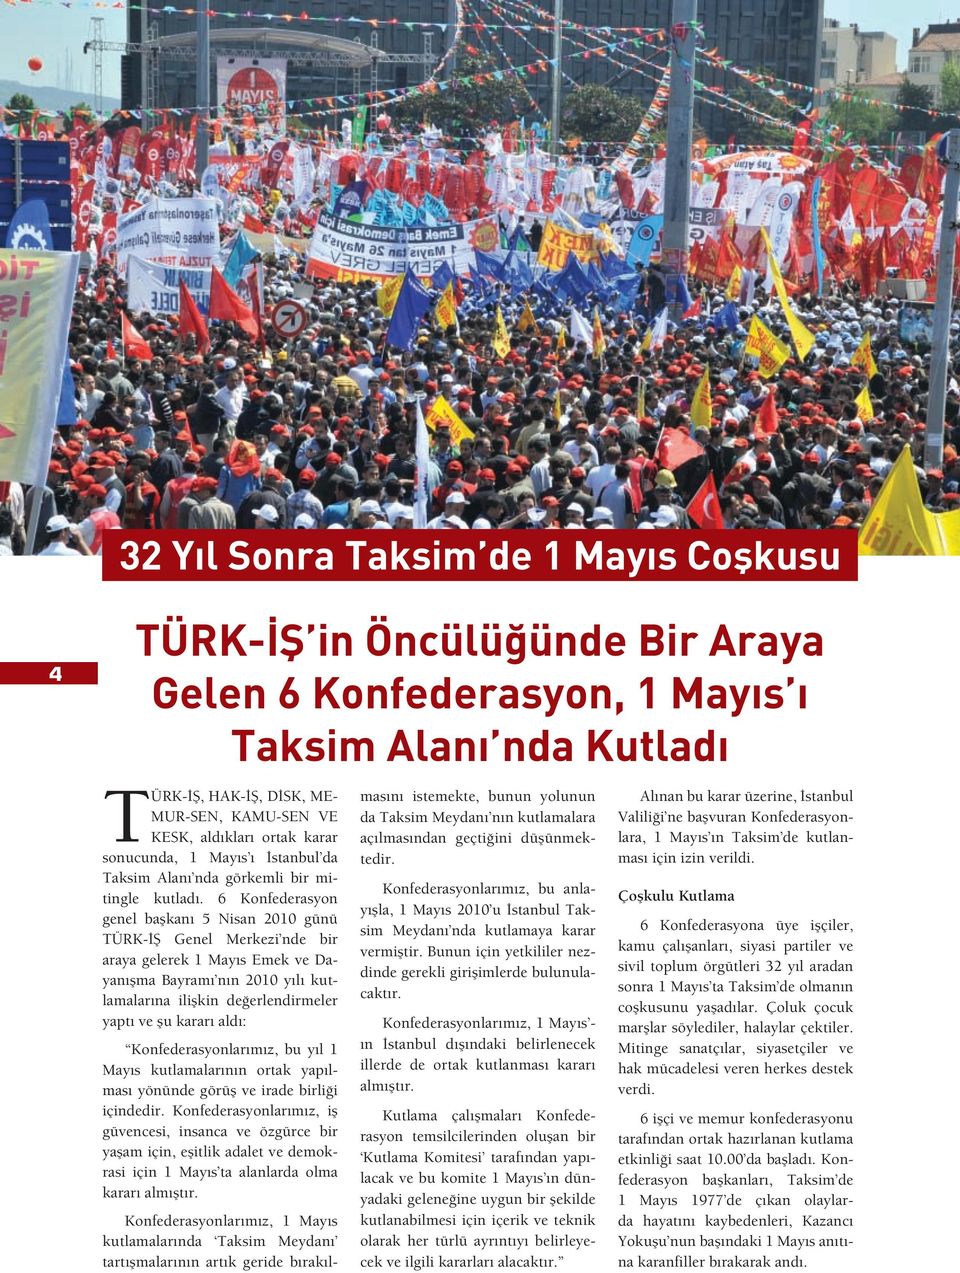 6 Konfederasyon genel ba kanı 5 Nisan 2010 günü TÜRK- Genel Merkezi nde bir araya gelerek 1 Mayıs Emek ve Dayanı ma Bayramı nın 2010 yılı kutlamalarına ili kin de erlendirmeler yaptı ve u kararı